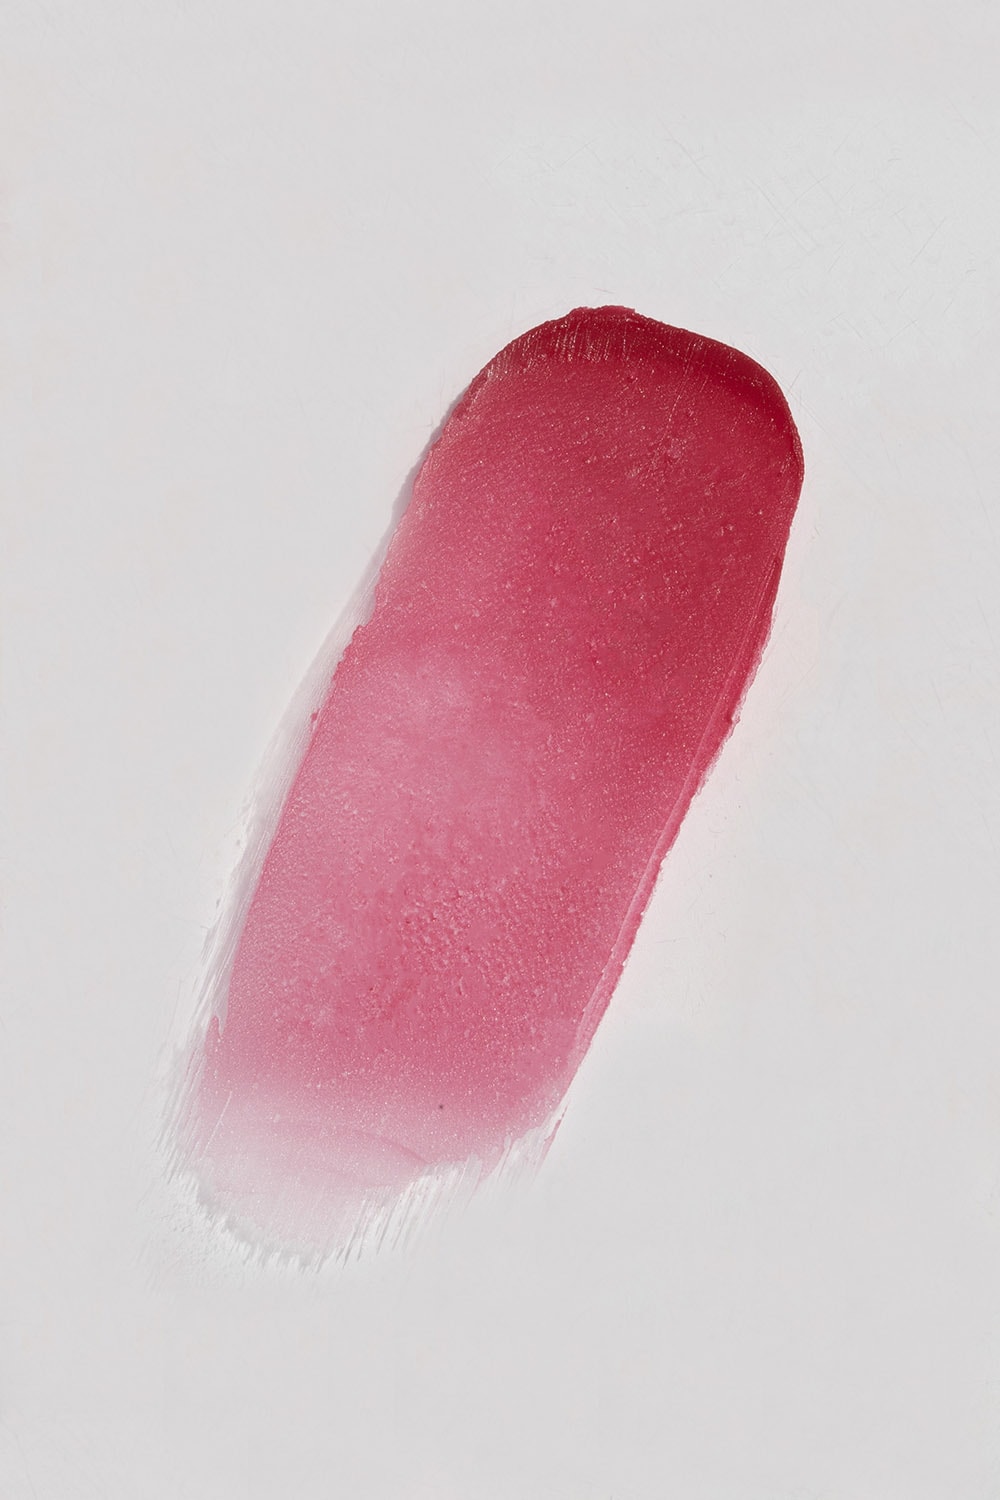 Violette_FR Bisou Balm Sheer Matte Lipstick Release